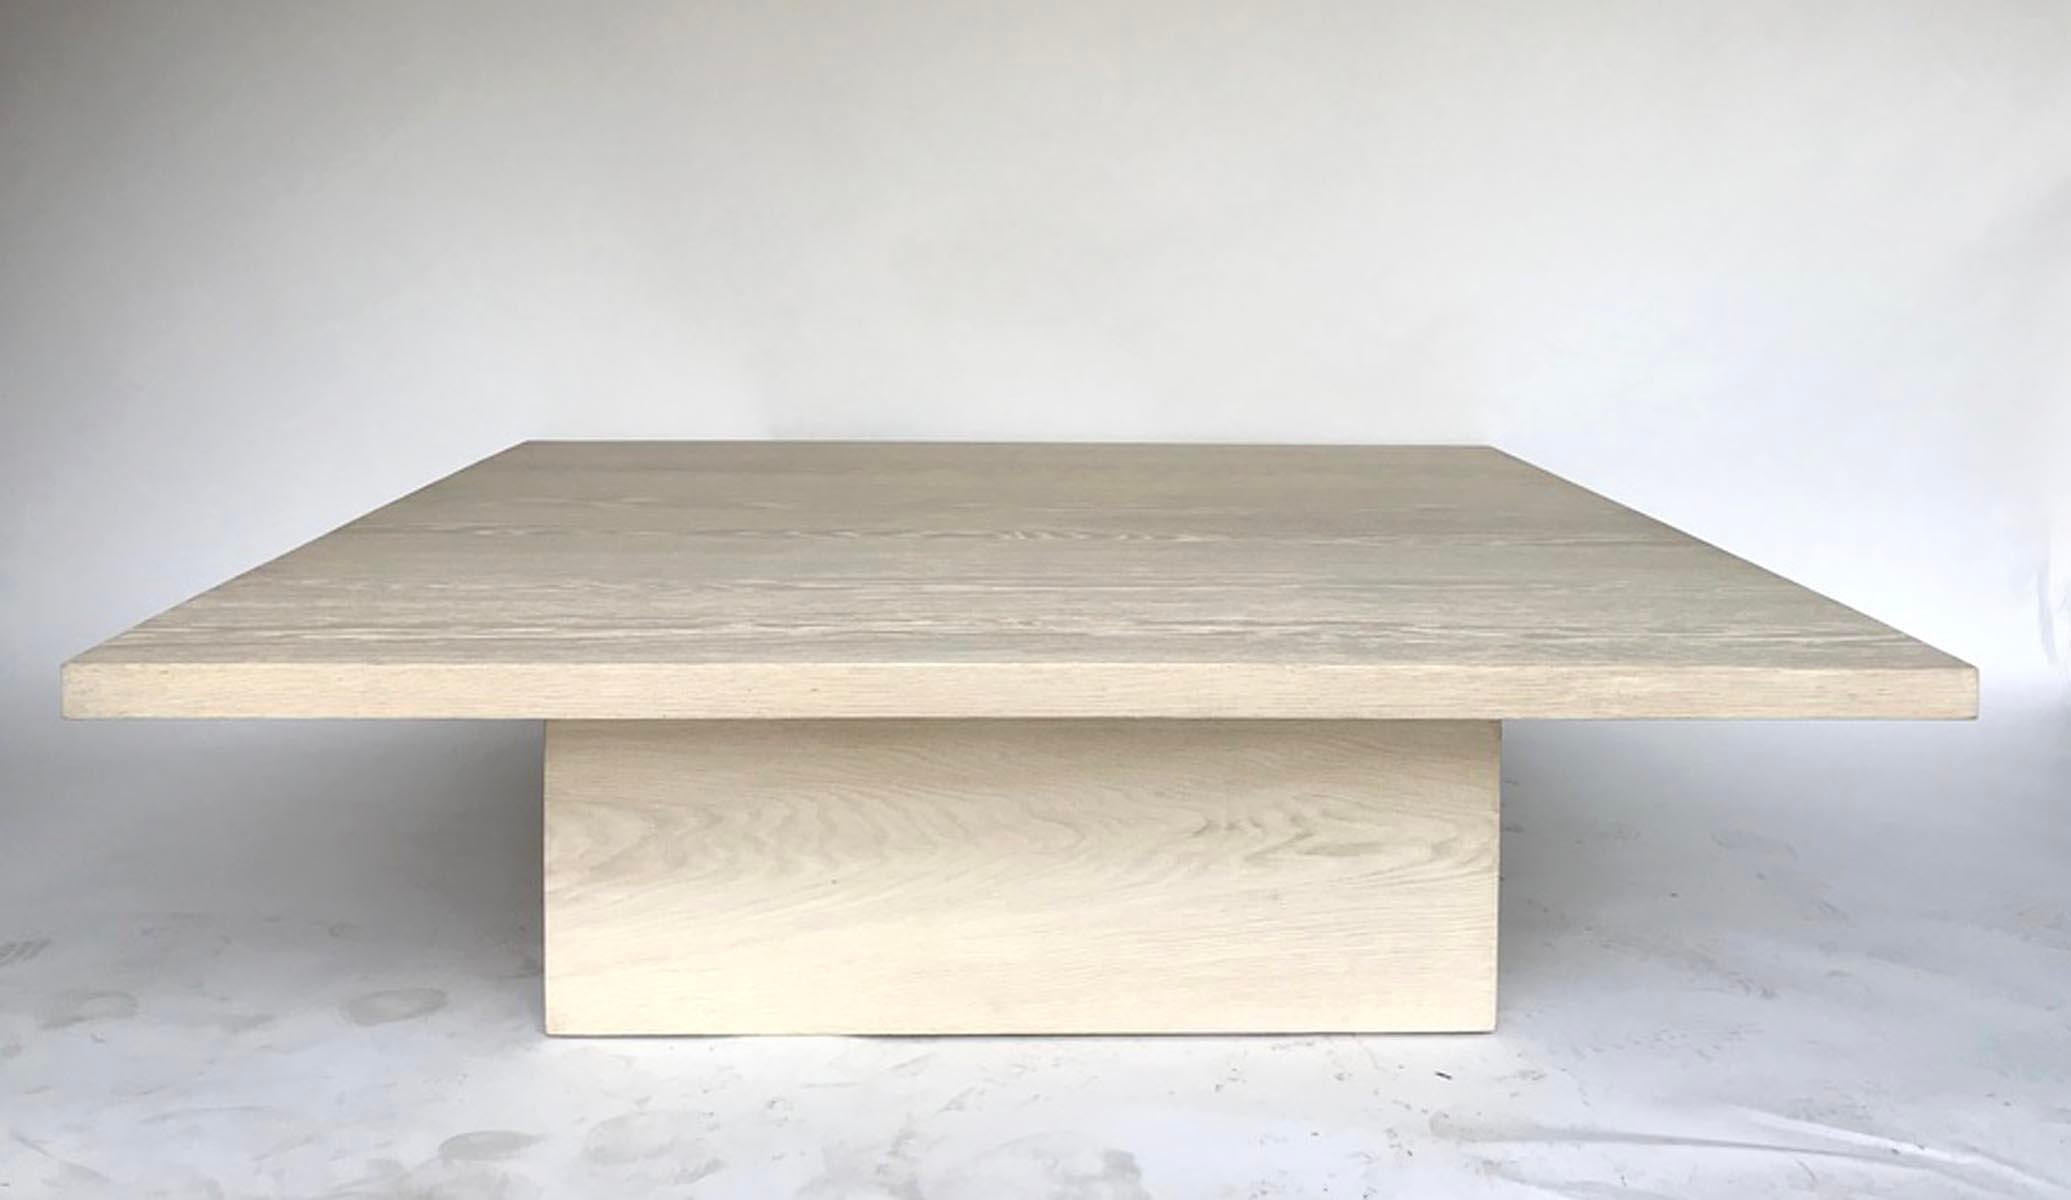 Table basse en chêne blanc massif avec base cubique à onglet. Cette table basse de 60 par 60 pouces est disponible hors sol mais peut également être fabriquée dans des dimensions personnalisées. Finition en chêne clair. Délai de livraison : 12 à 14